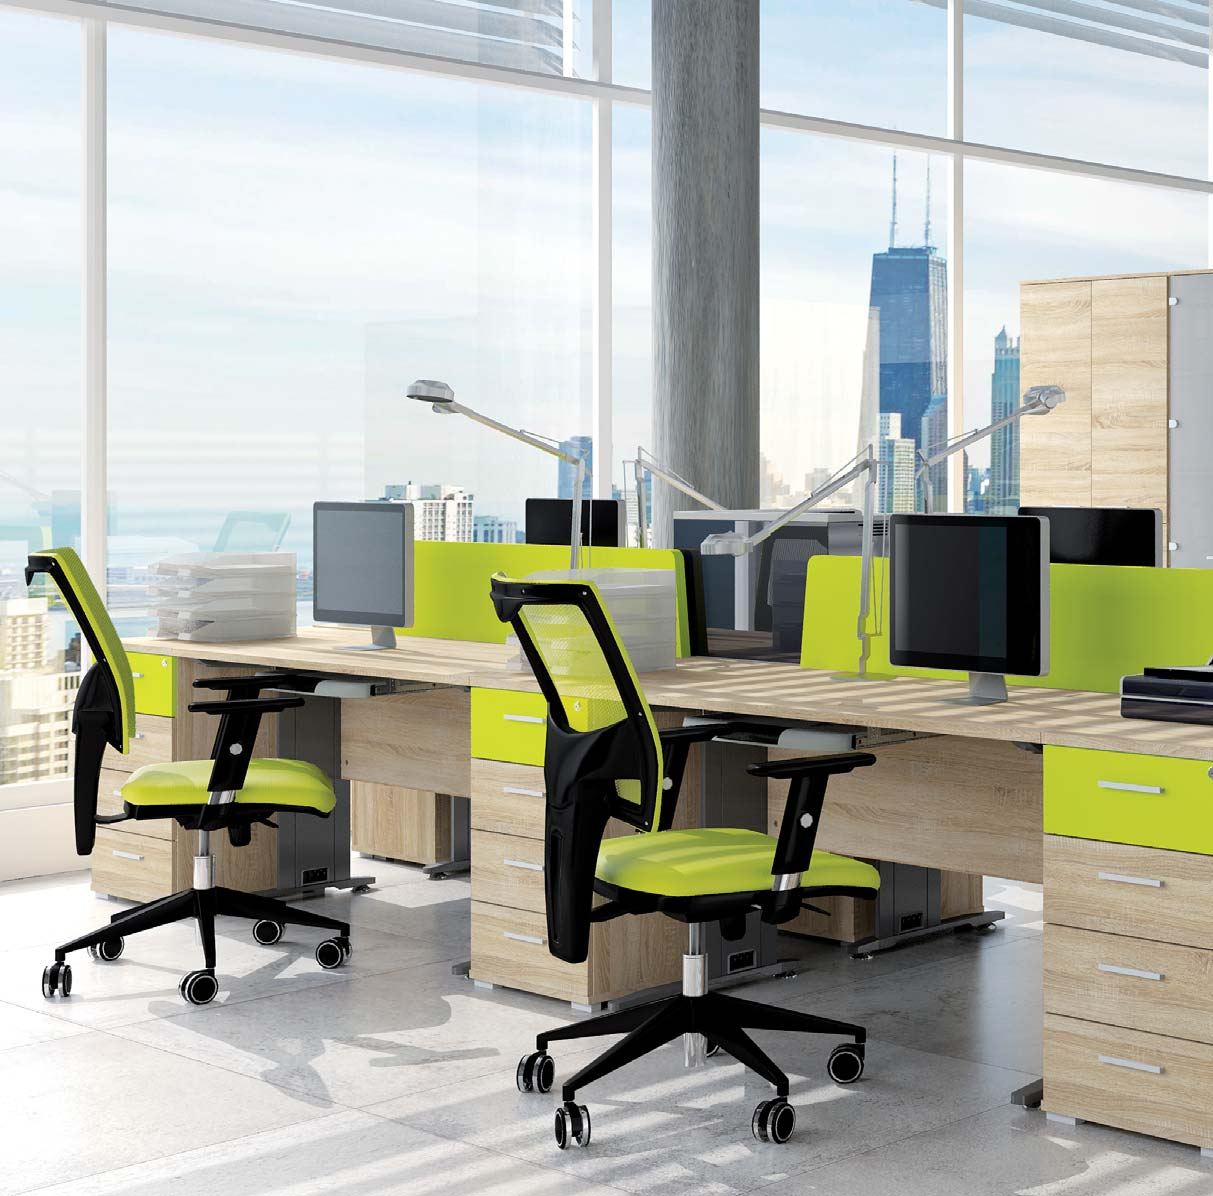 88 OPTIMAL BIURO, GABINET Meble biurowe Optimal doskonale nadają się do wyposażenia klasycznych pomieszczeń biurowych, jak i biur typu open space czy też sal konferencyjnych.